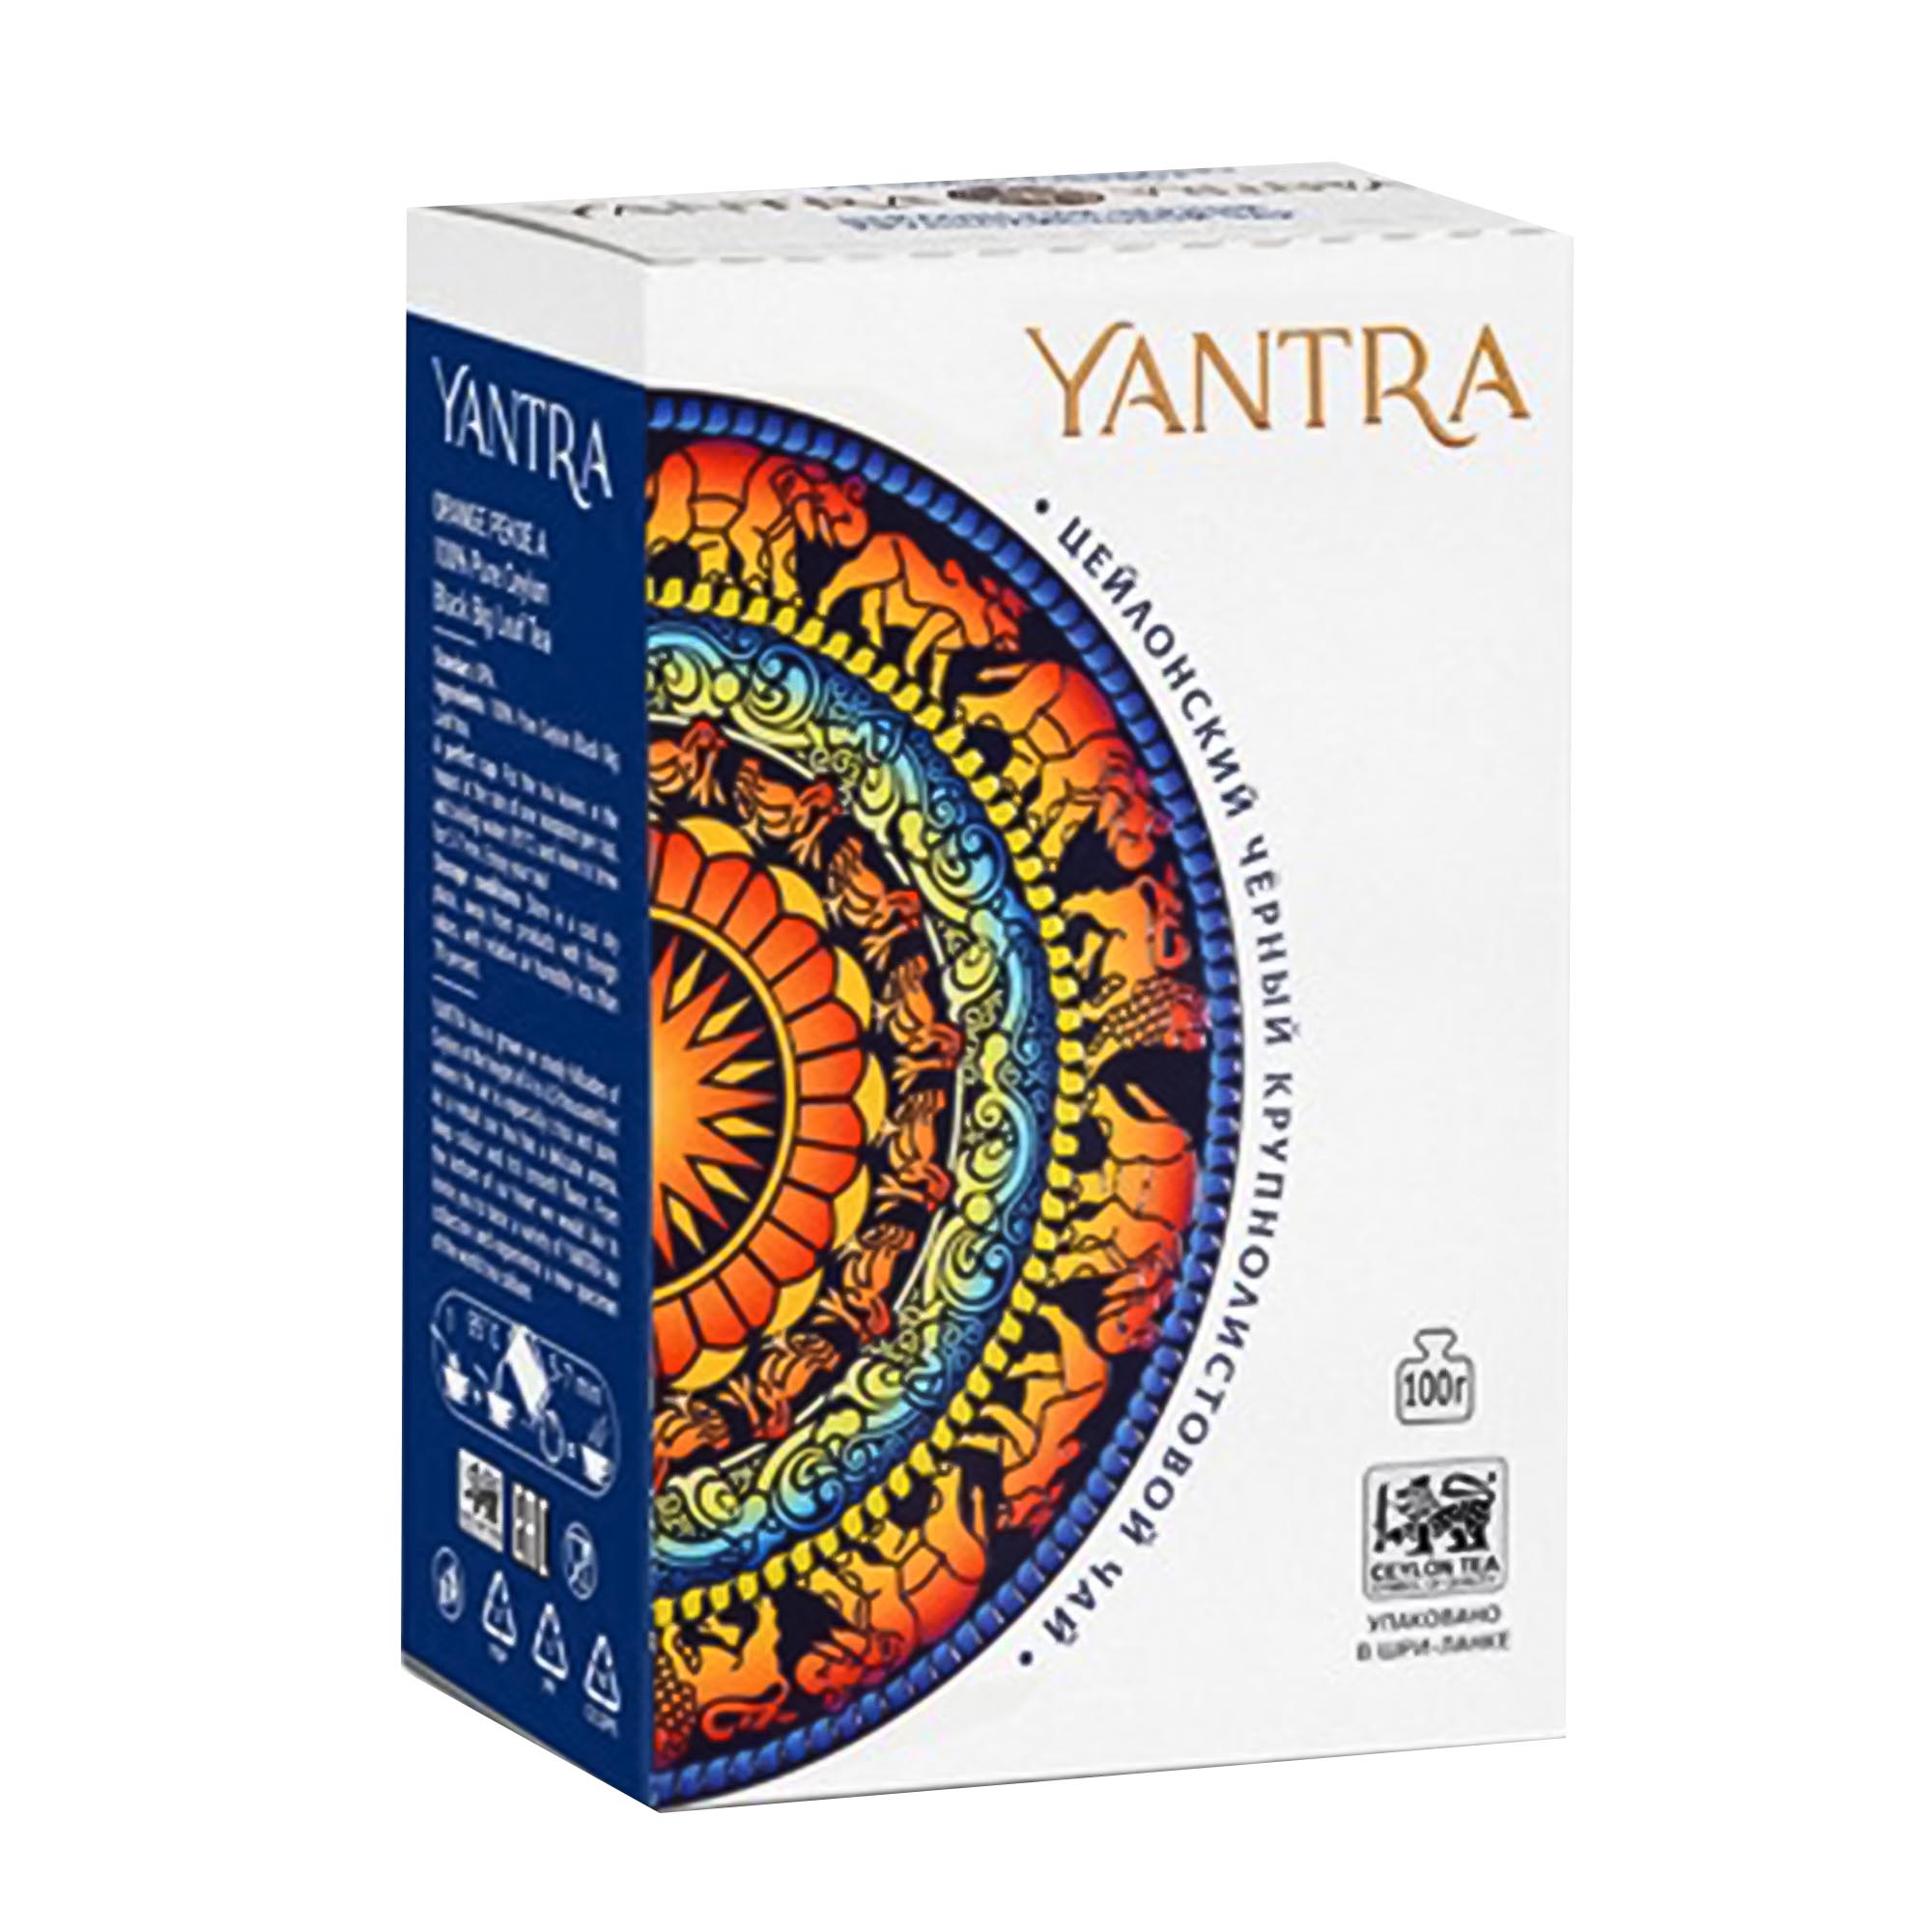 Чай черный крупнолистовой Yantra ОРА 200 г чай среднелистовой yantra flowery broken orange pekoe 100 г